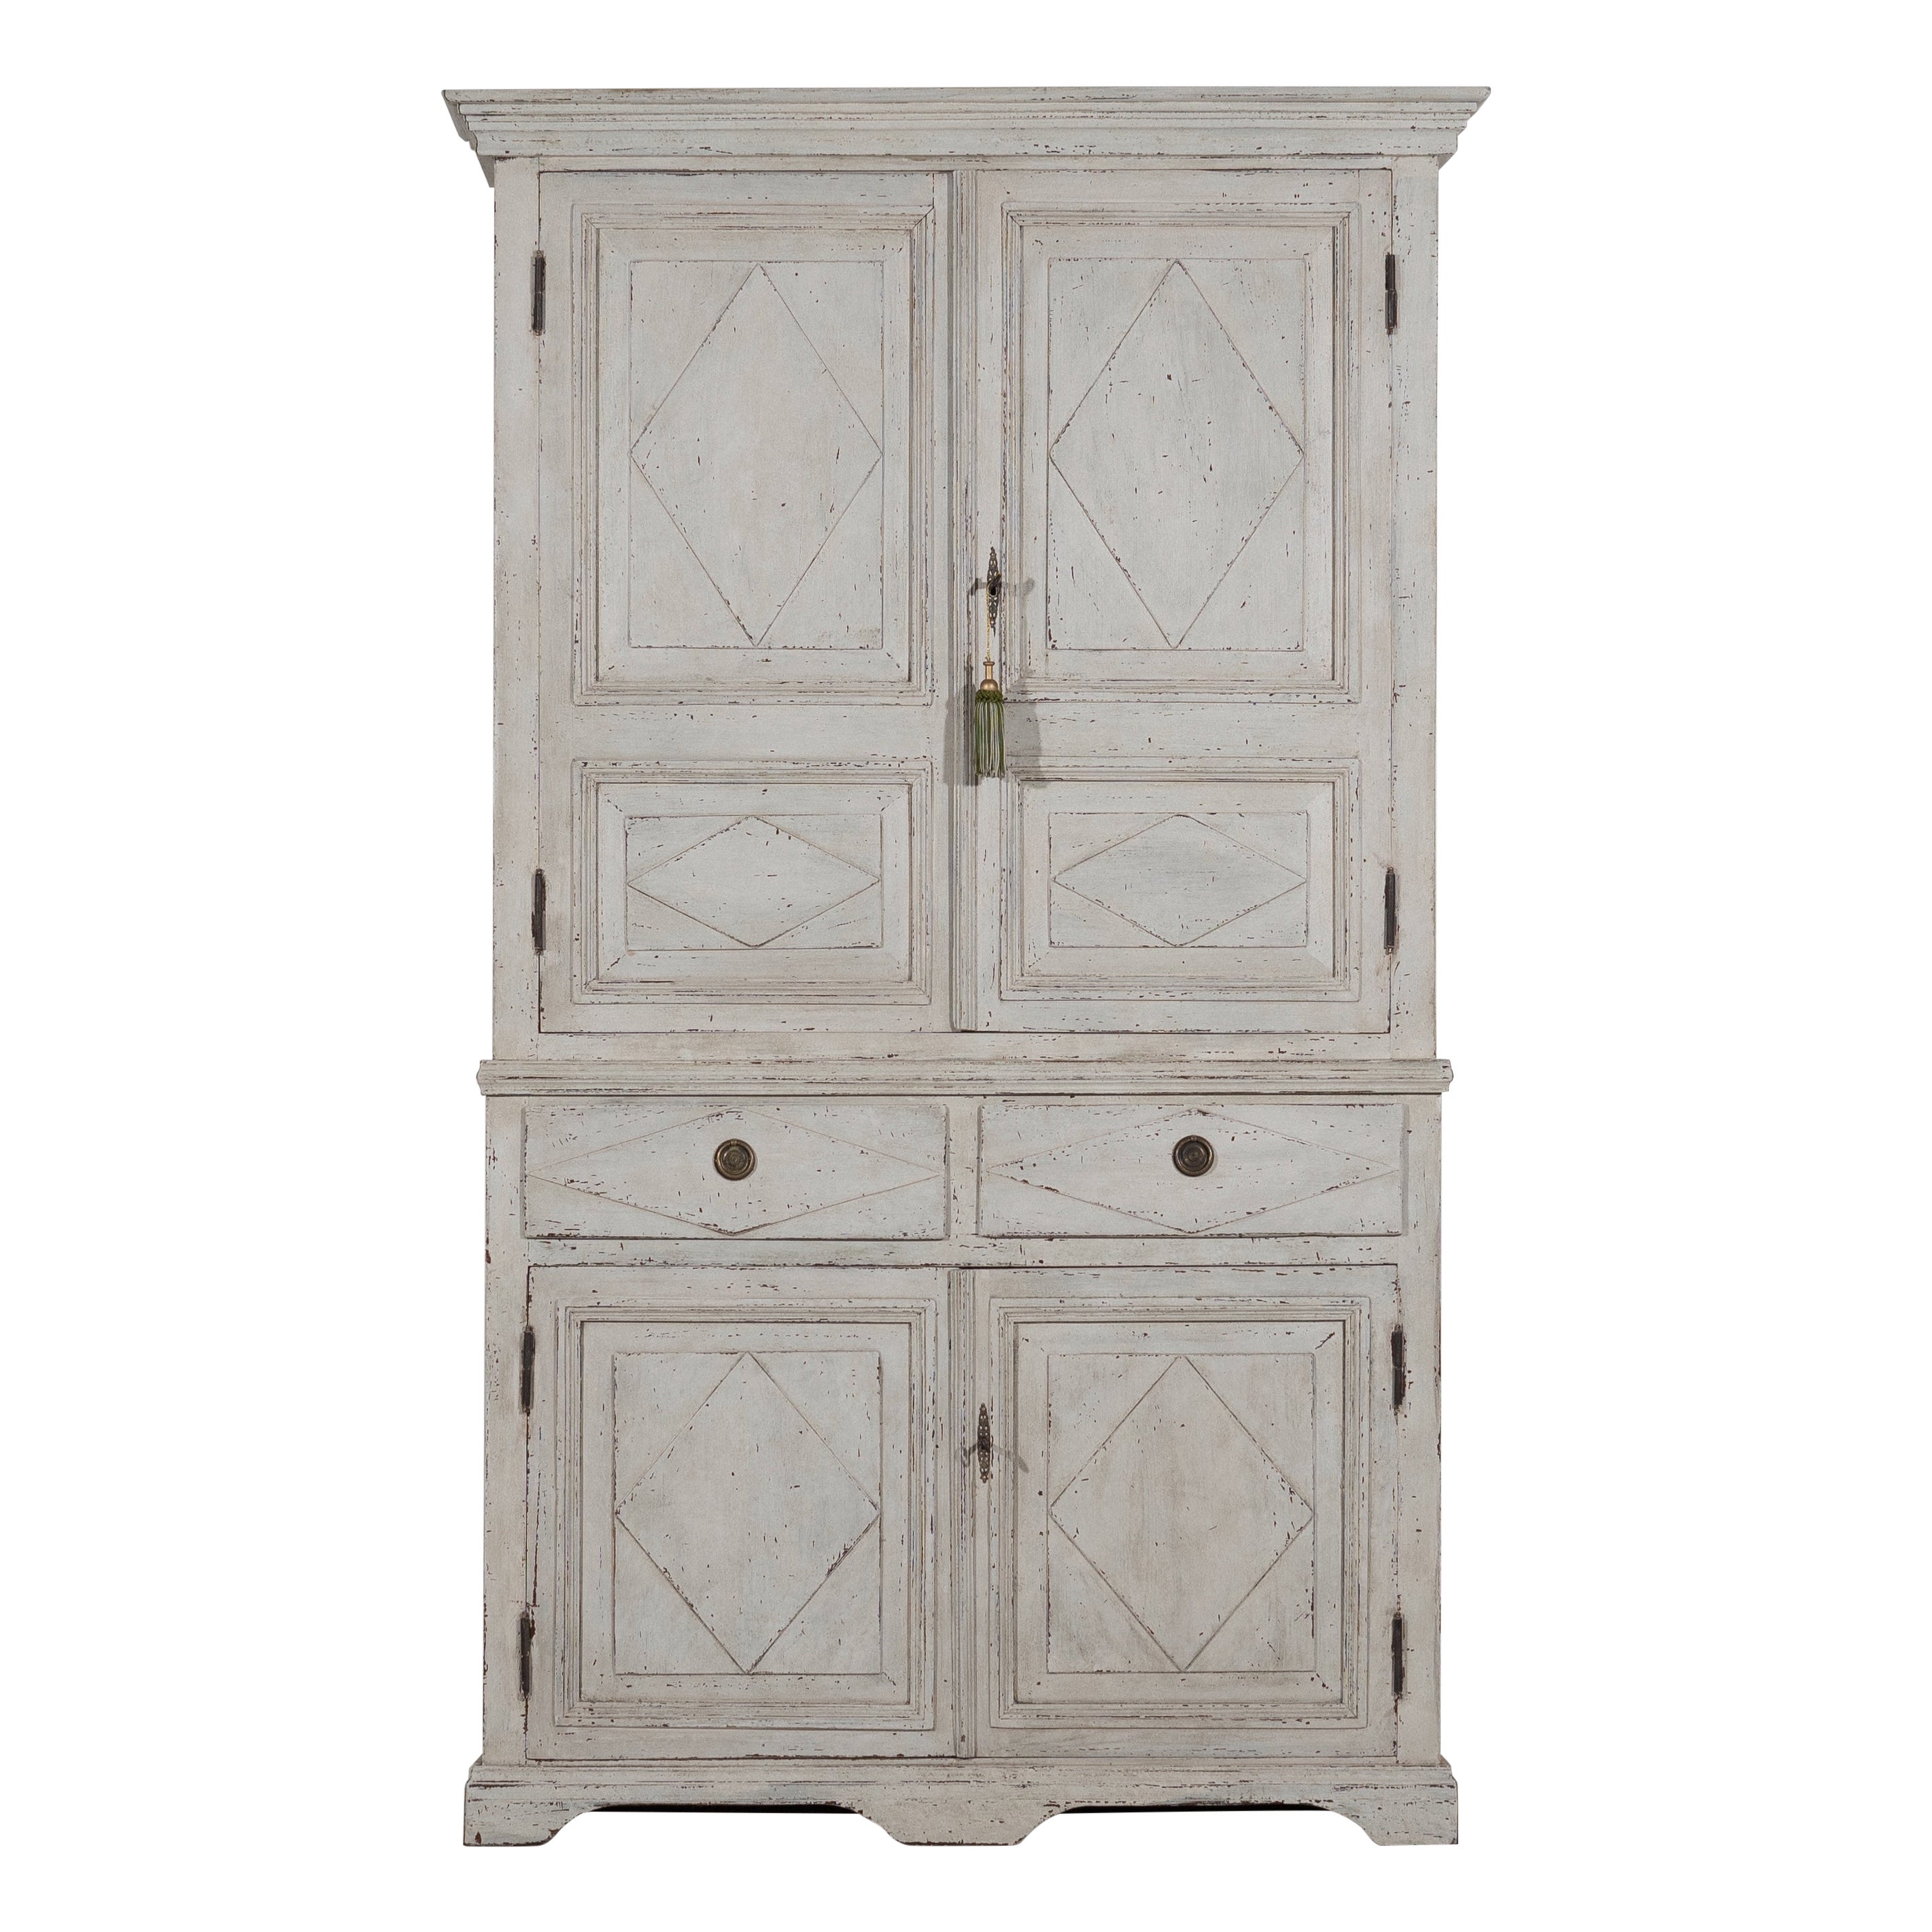 Magnifique armoire de style gustavien, datant d'environ 100 ans